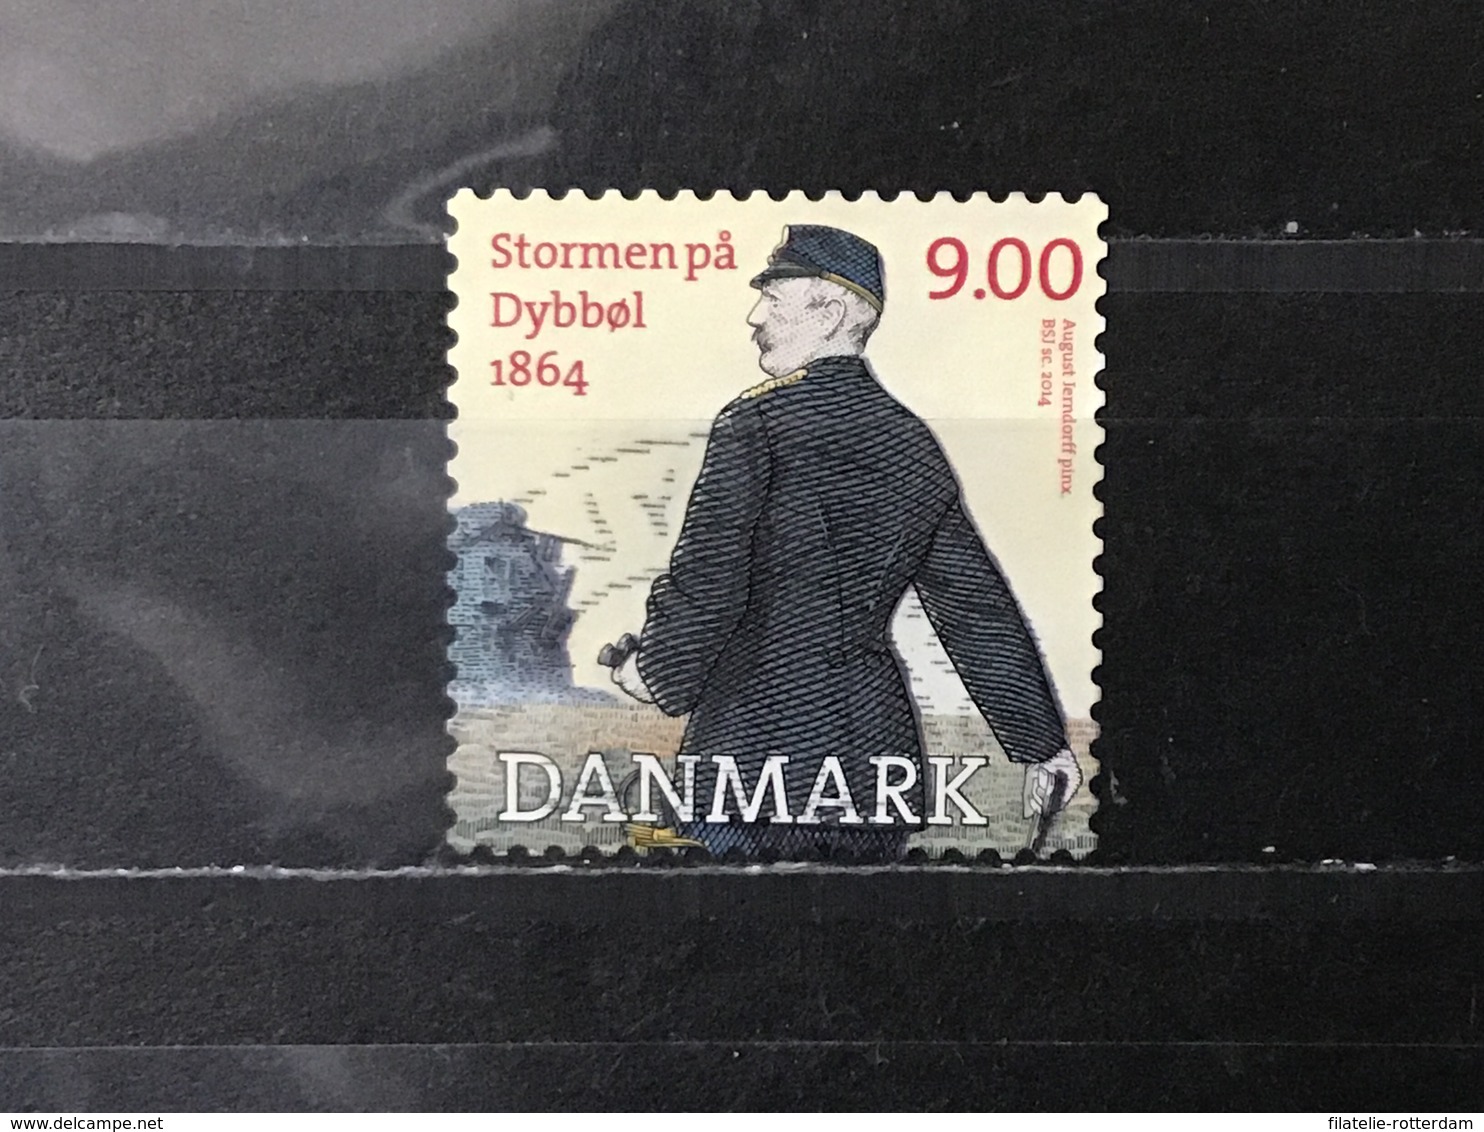 Denemarken / Denmark - Oorlog Van Dybbol (9) 2014 - Used Stamps